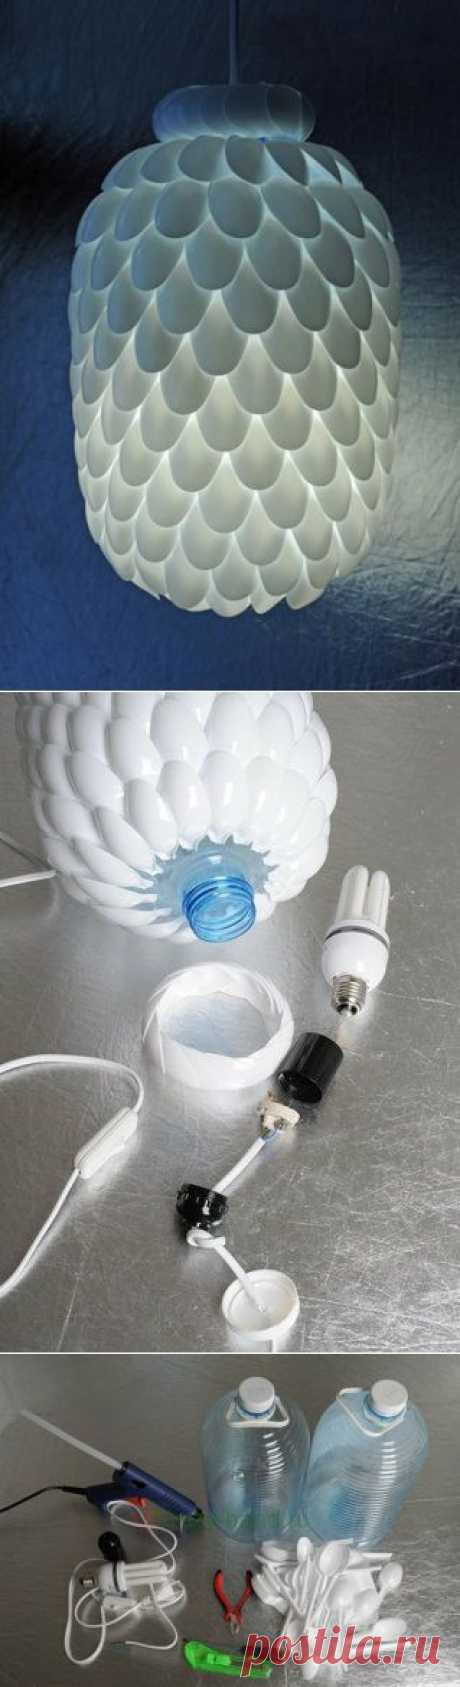 Лампа из пластиковых ложек и канистры | Хитрости Жизни